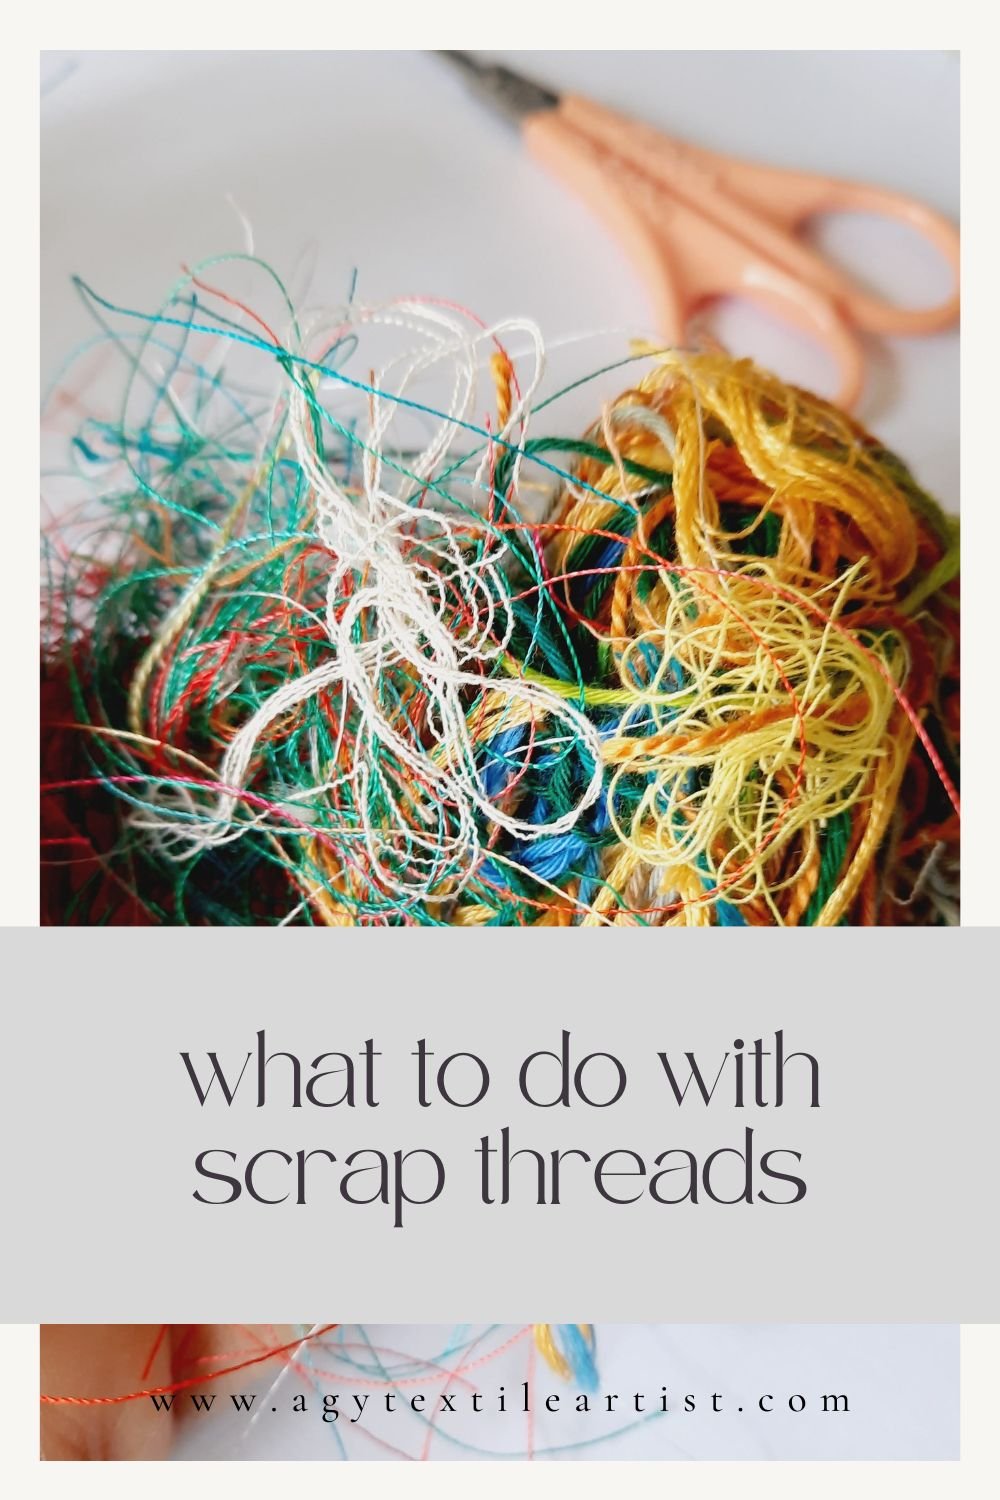 DIY Thread organizer idea from waste cardboard# Sewing Thread organizer  craft from waste cardboard# 